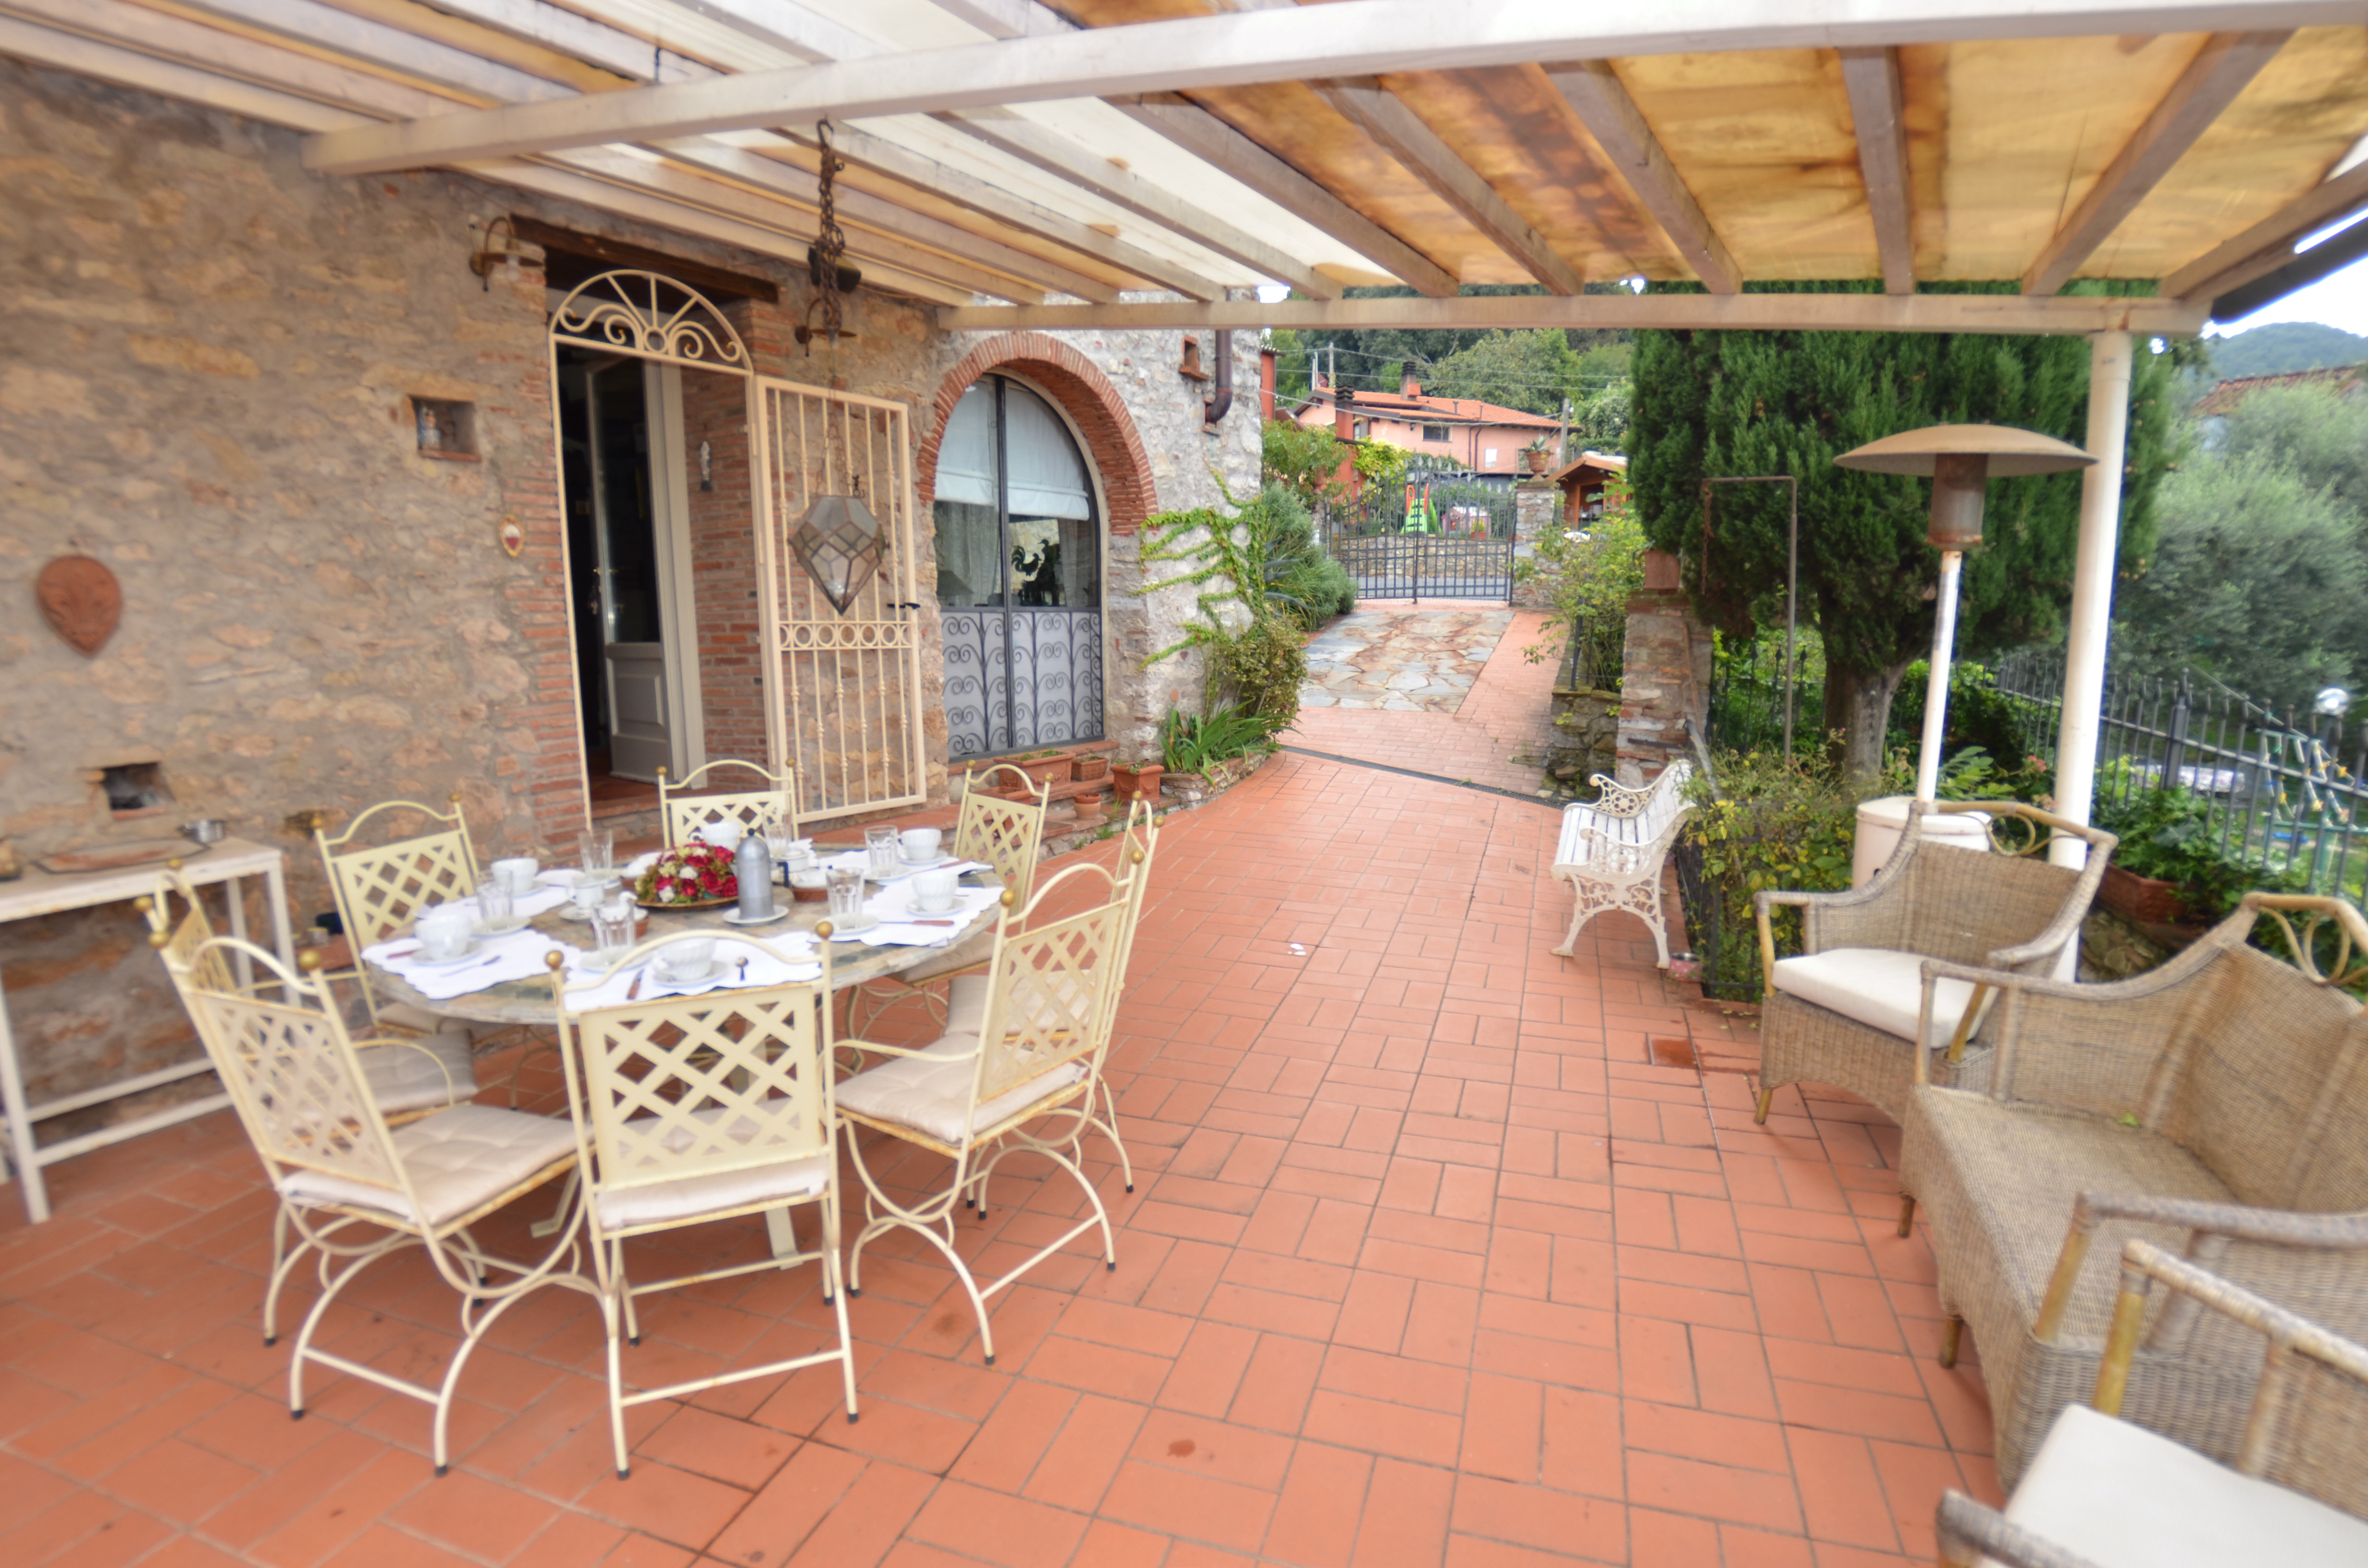 88_1bafd31_Casa Borgo Bucatra, vakantiehus met privÃ© zwembad, panoramisch uitzicht, Toscane, Lucca (33)